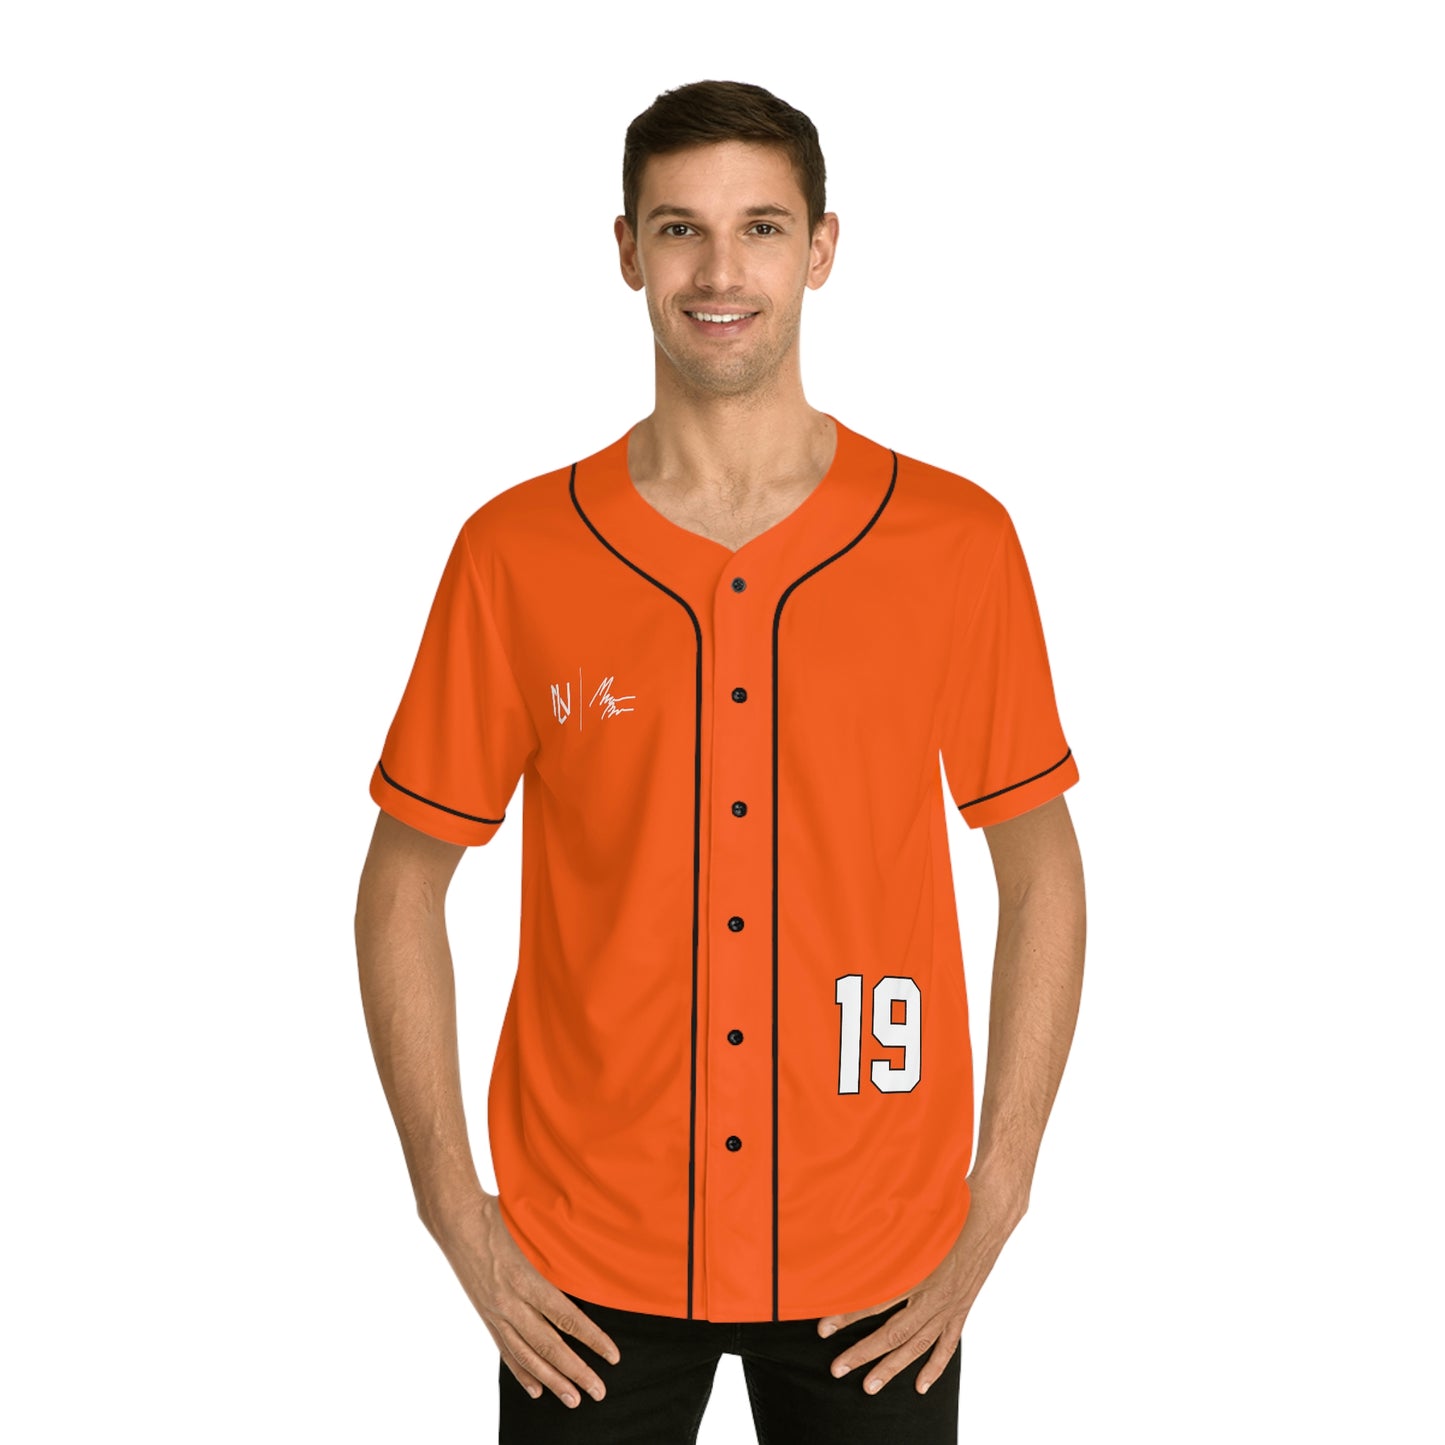 Marcus Brown Baseball Jersey (Orange)